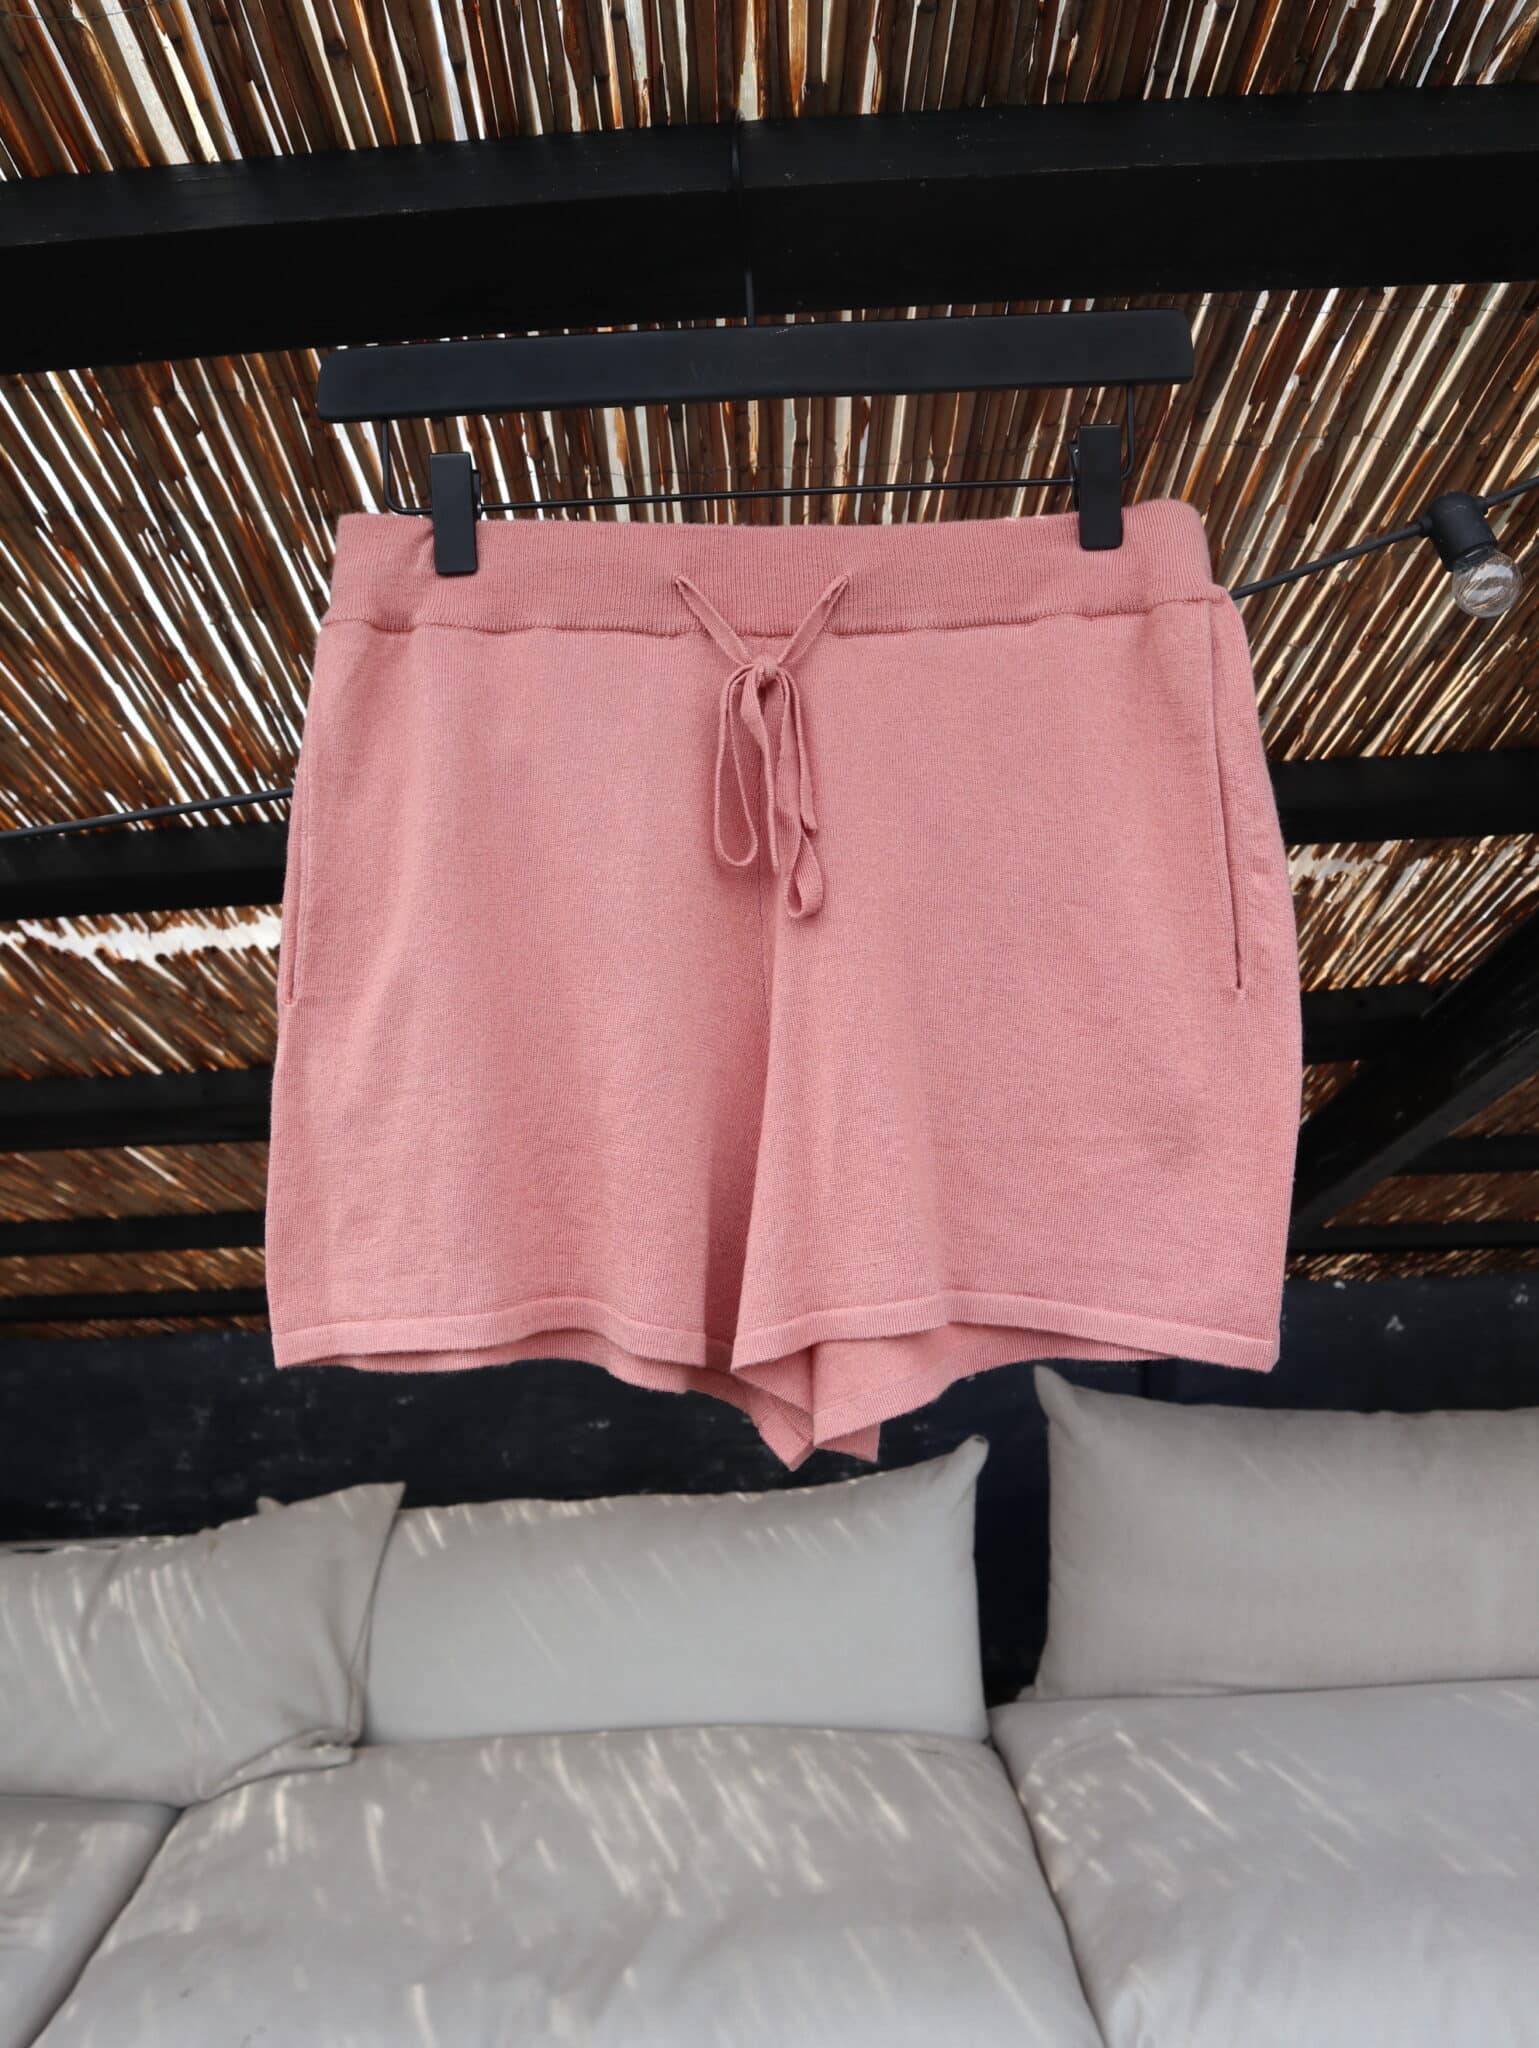 Basis shorts i silke og cashmere fra Wuth Copenhagen. De perfekte short til sommer.